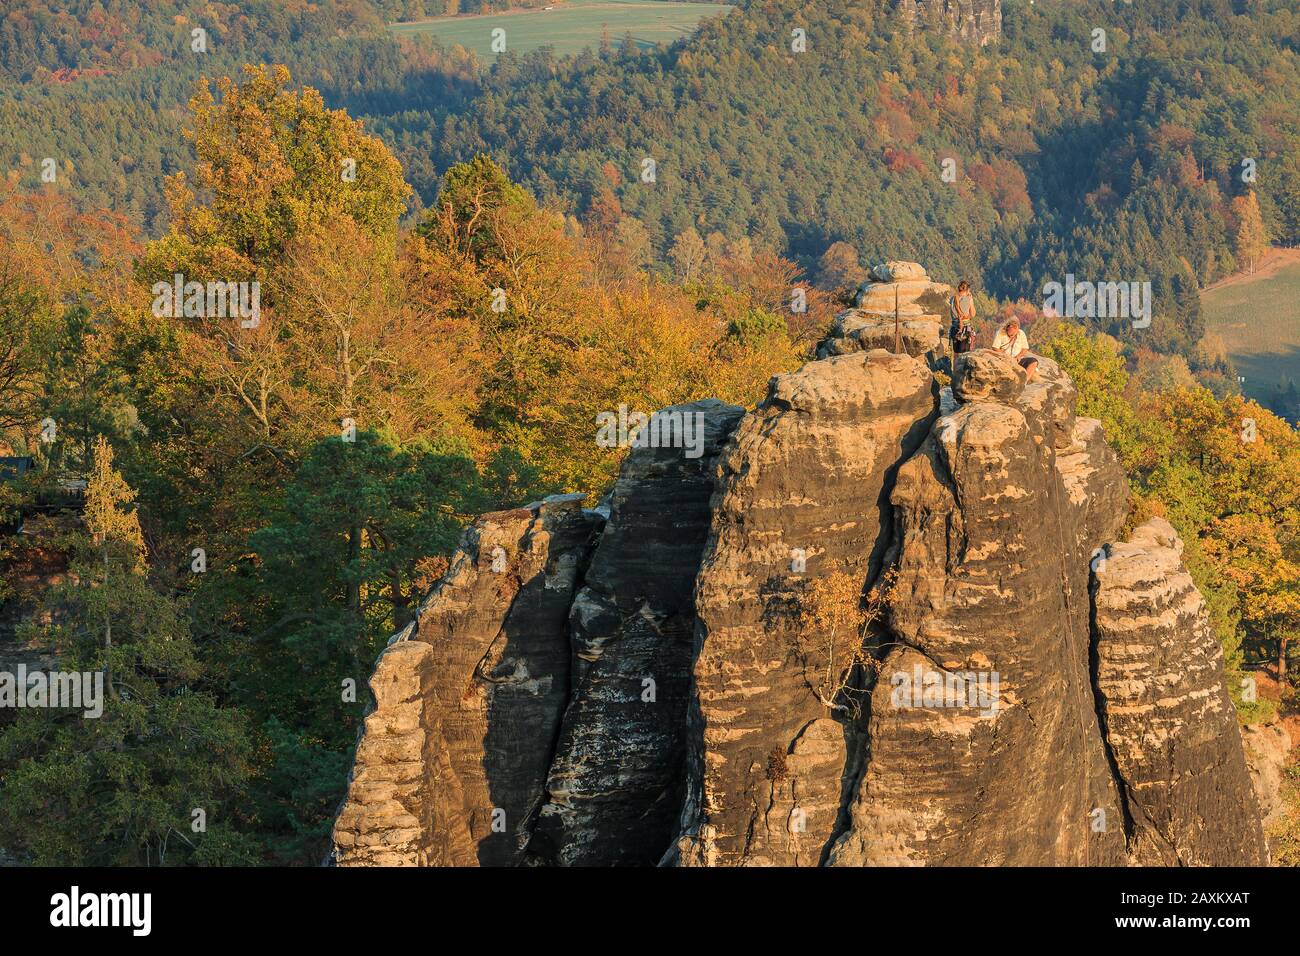 Paysage d'automne avec rochers grimpants dans le parc national de la Suisse saxonne. Elbe Sandstone montagnes avec formation de roches, forêts dans des couleurs saisonnières Banque D'Images